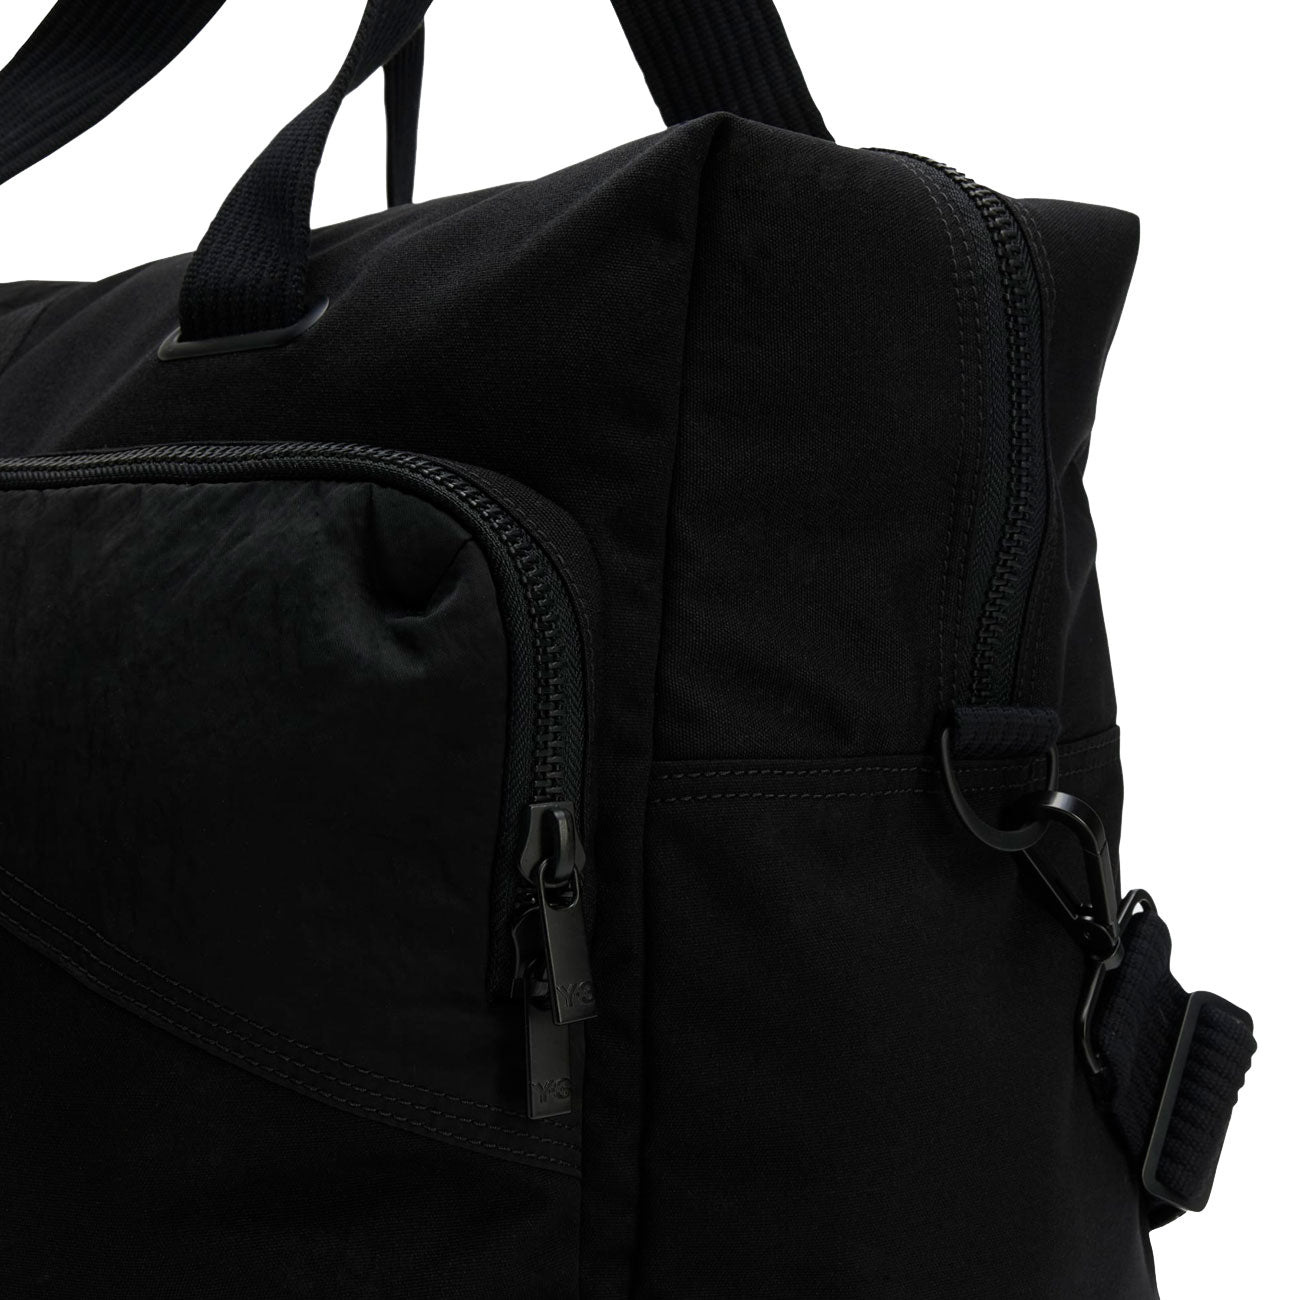 adidas Y-3 Holdall Bag (Schwarz)  - Allike Store